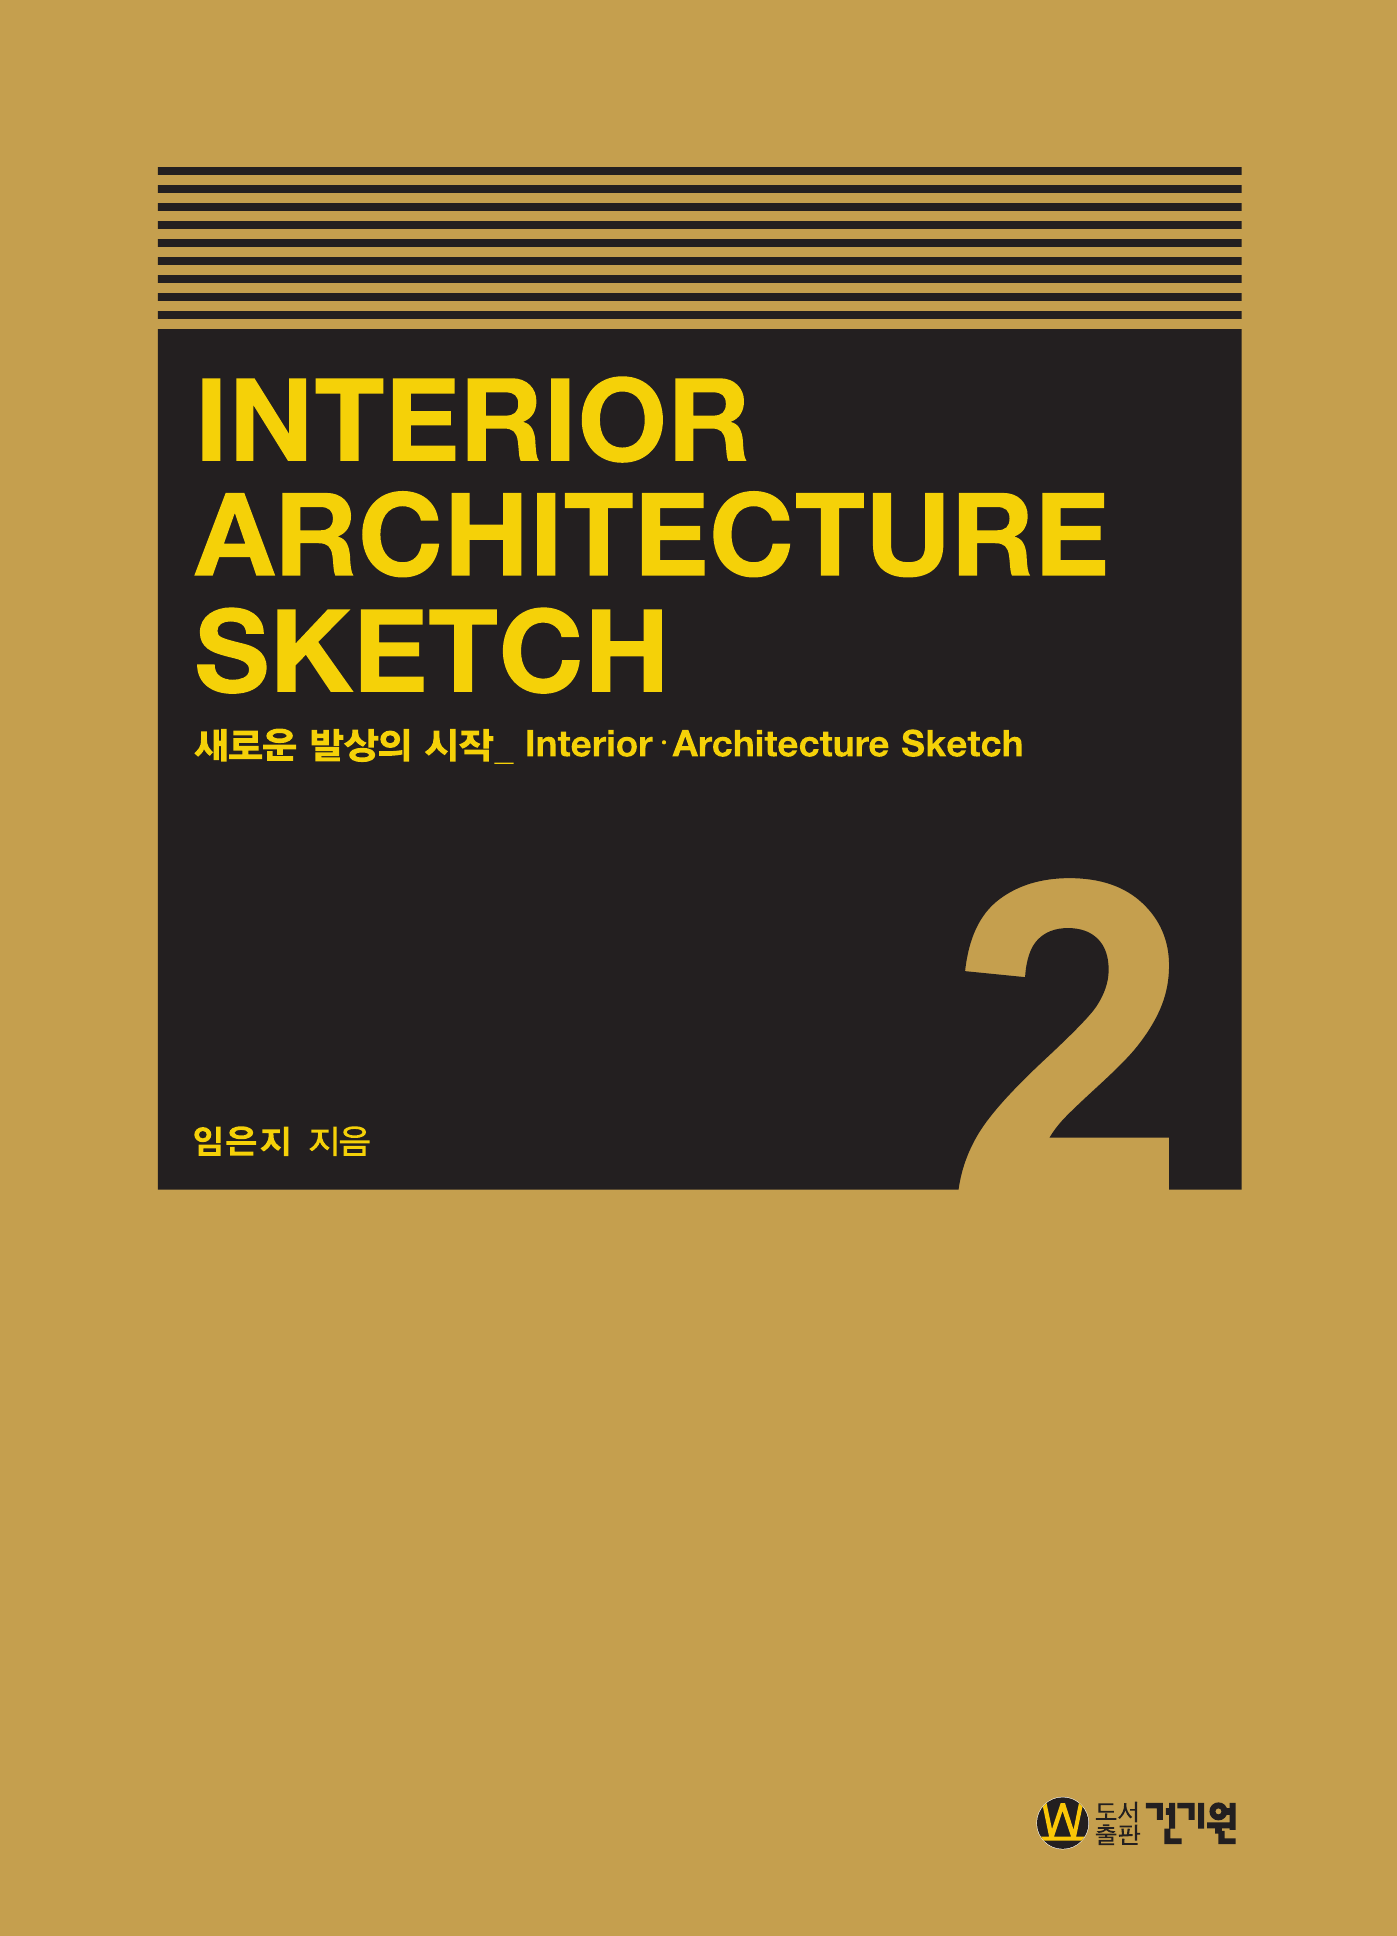 Interior Architecture Sketch 2: Interior Architecture Sketch